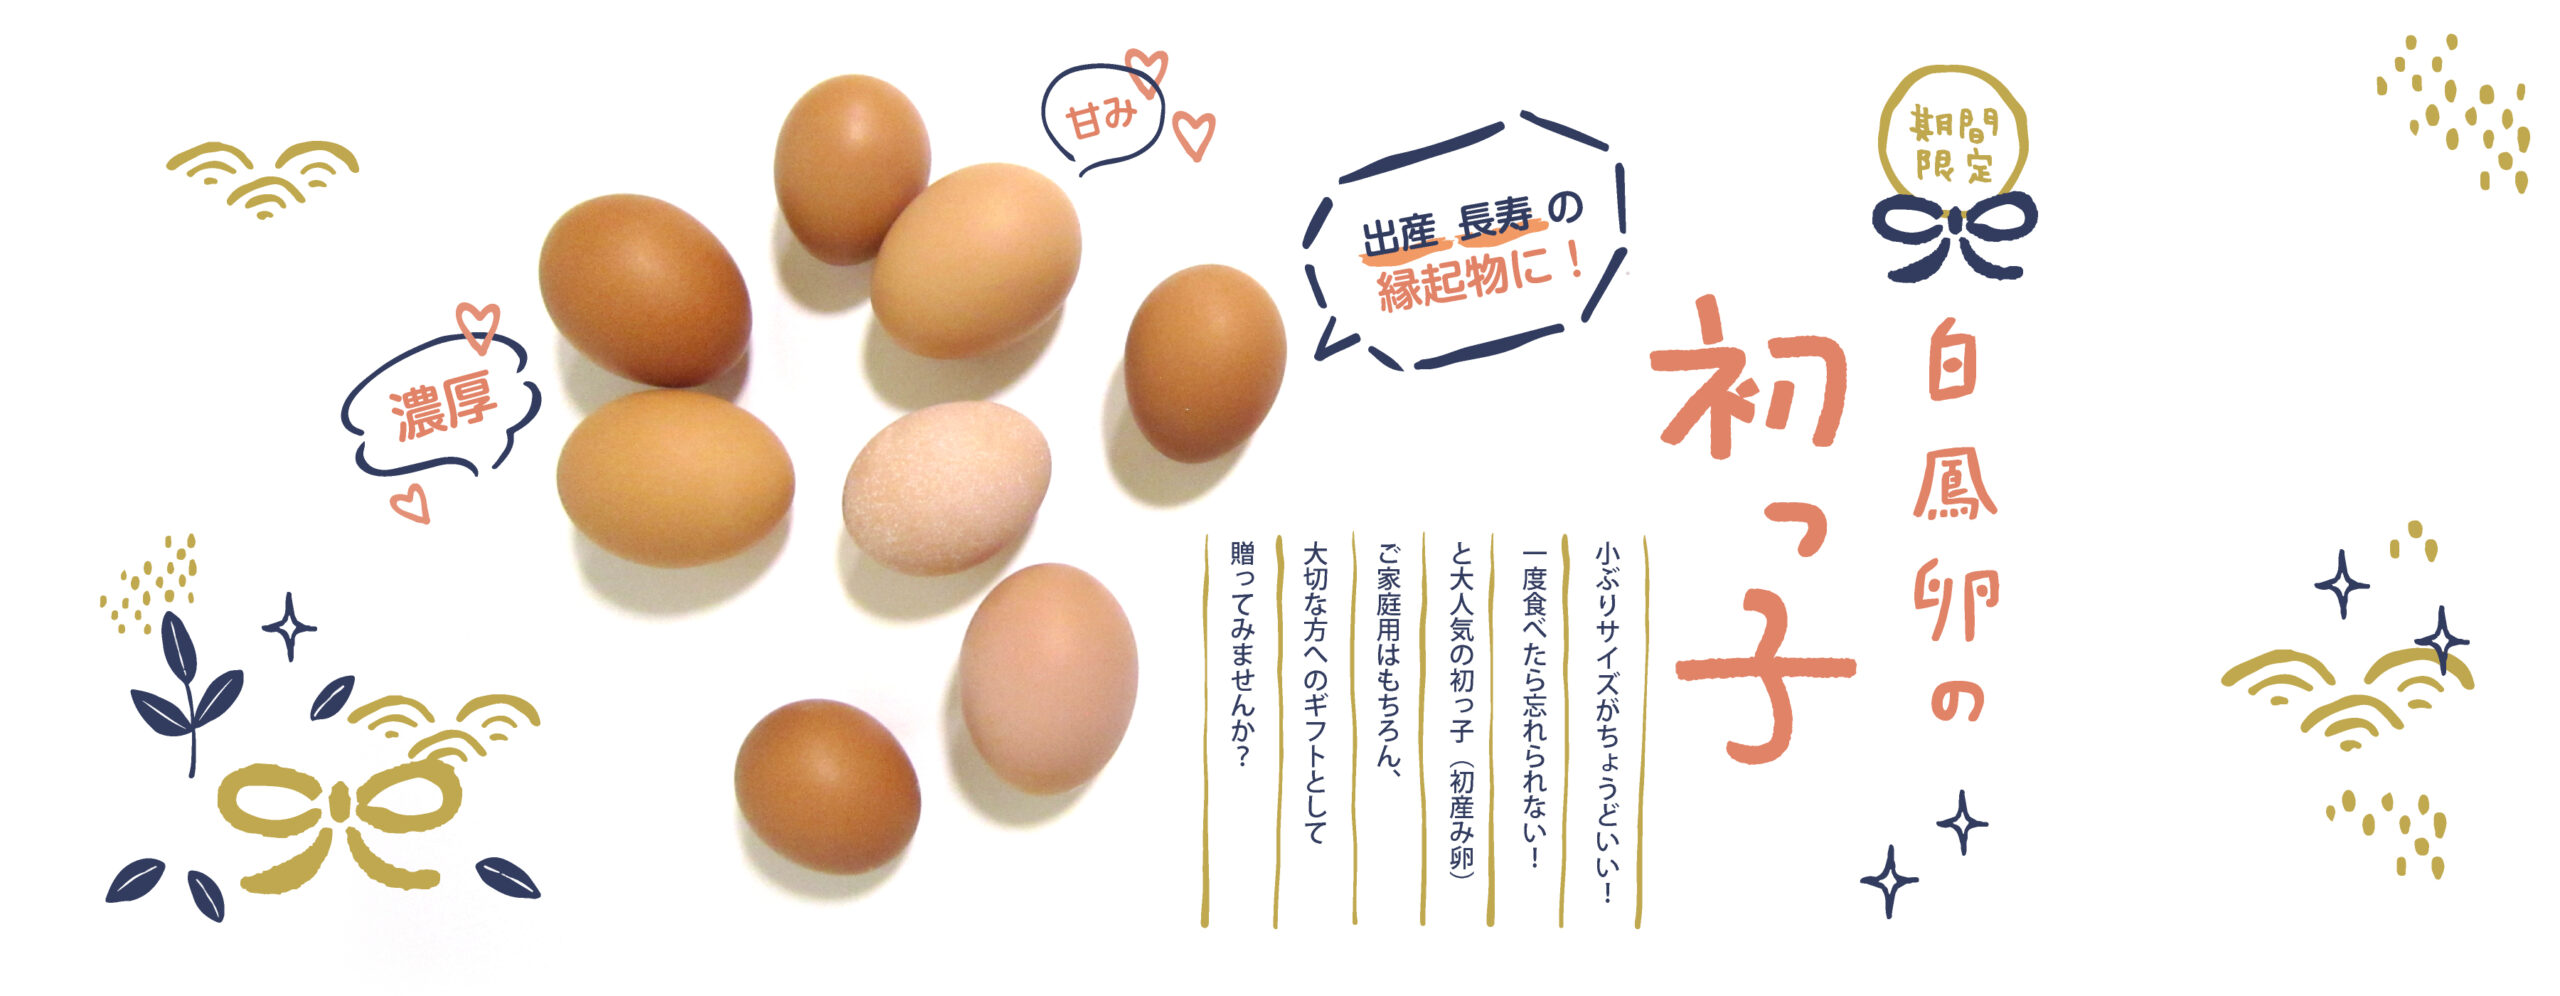 初卵S100コ※¥3500 - 食品